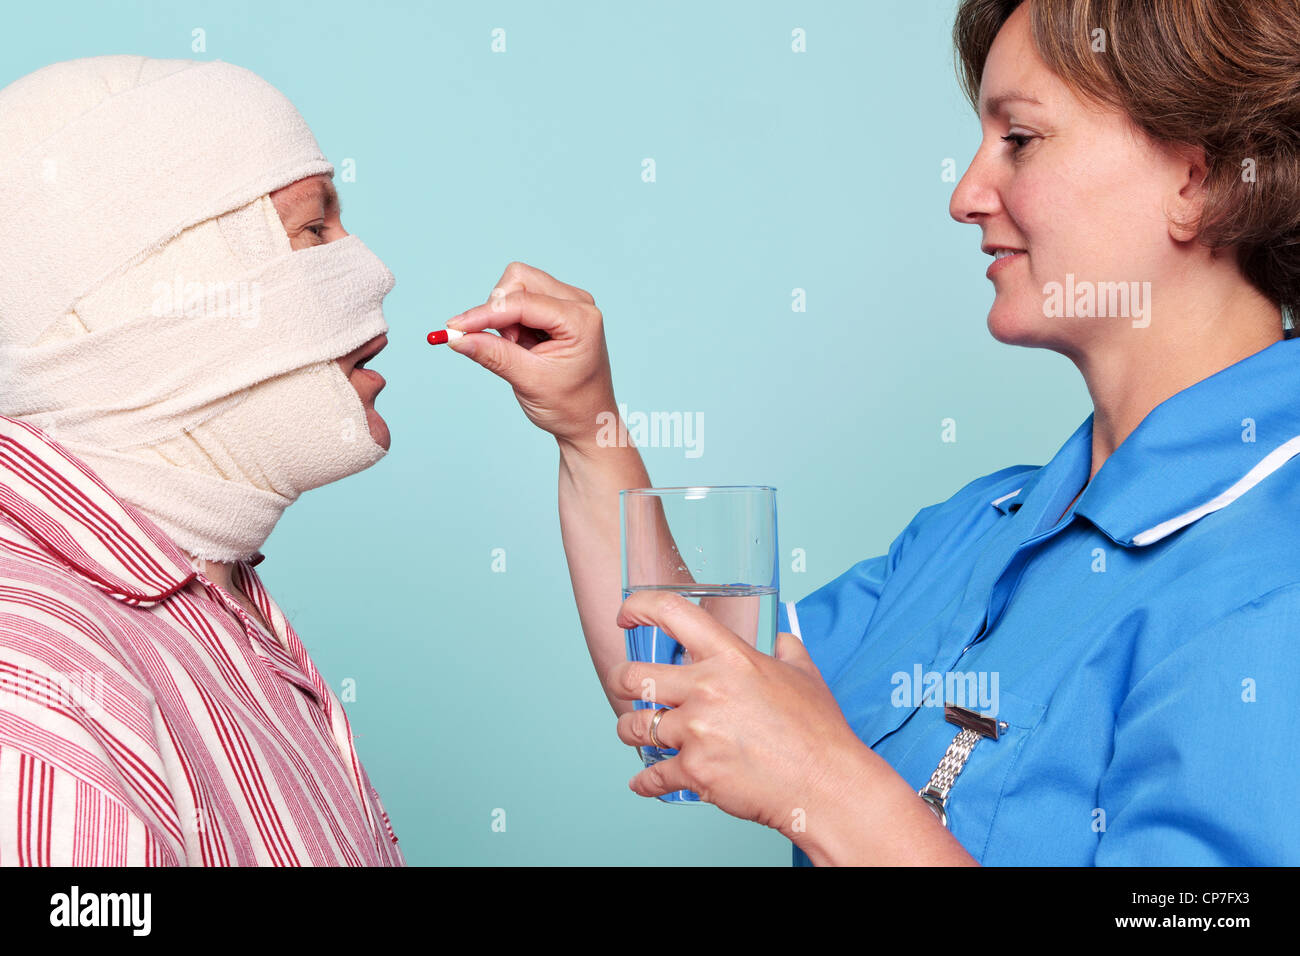 Foto von einer Krankenschwester, einem Patienten ein Medikament in Form einer Pille geben. Stockfoto